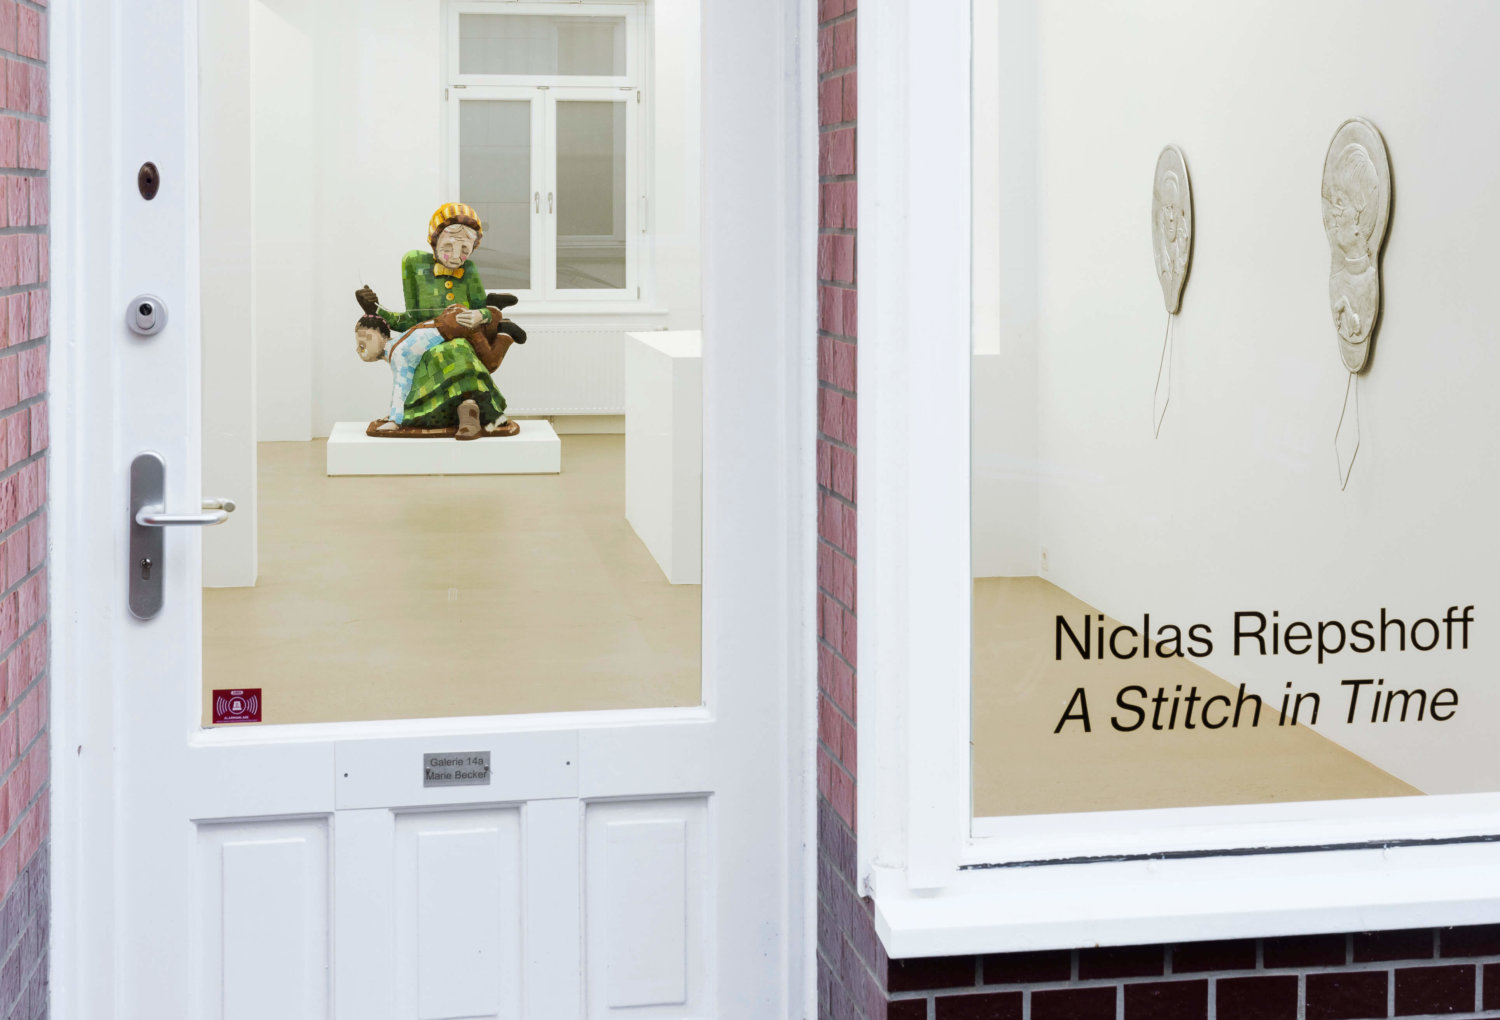 Installationsansicht, Niclas Riepshoff, A Stitch in Time, Aluminium Guss, Einfädler, Patchwork, Skulptur, Blick von außen